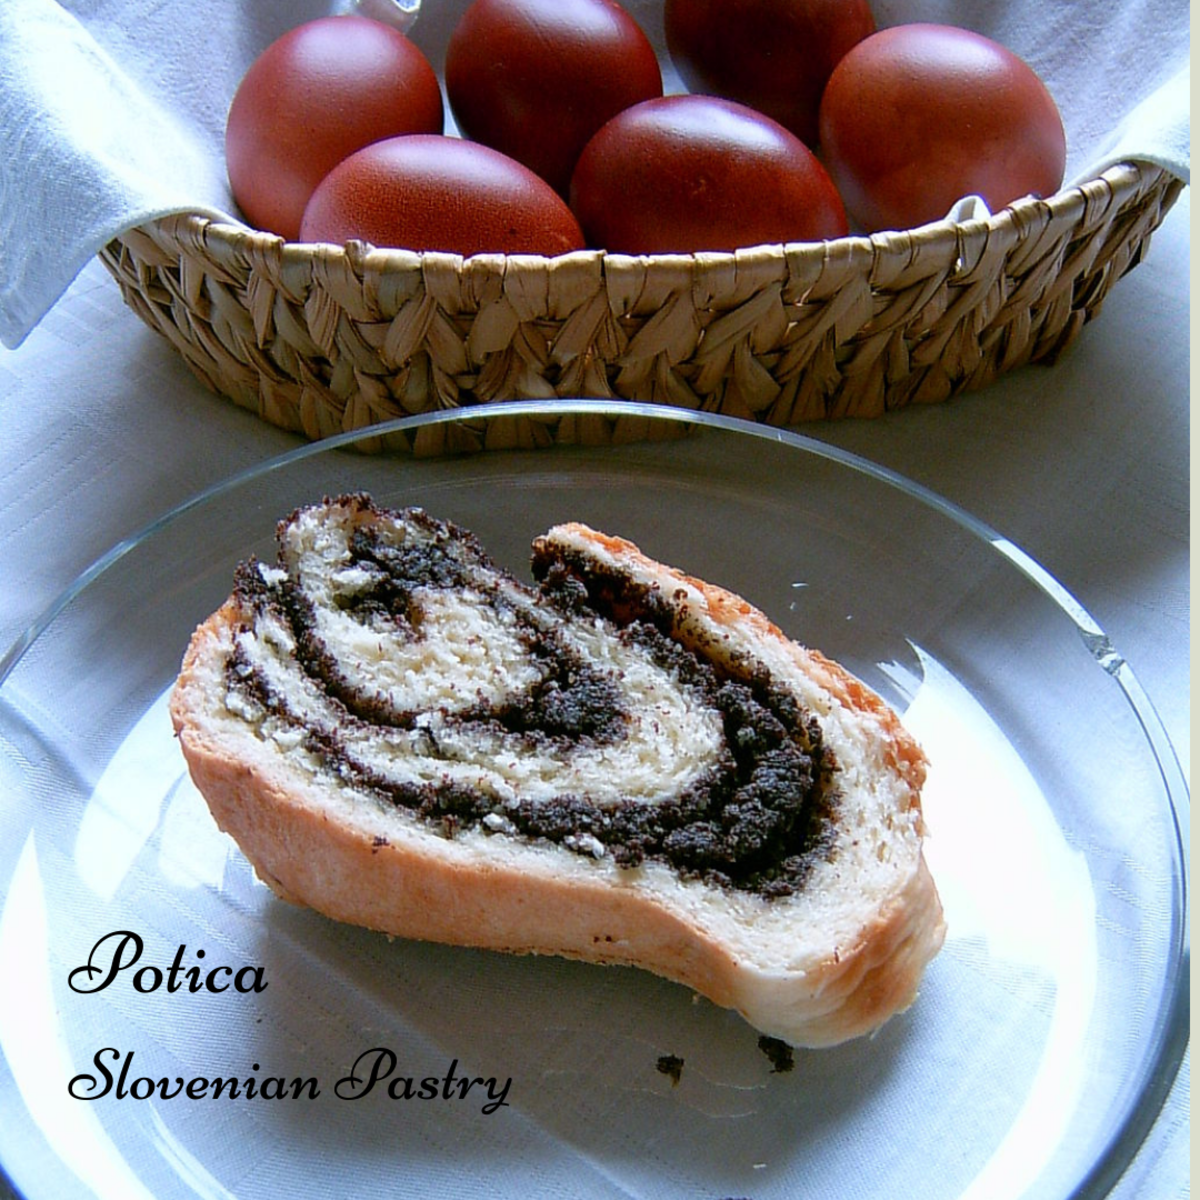 Traditional Slovenian potica (or povitica in Croatia) makes a delicious breakfast or dessert.